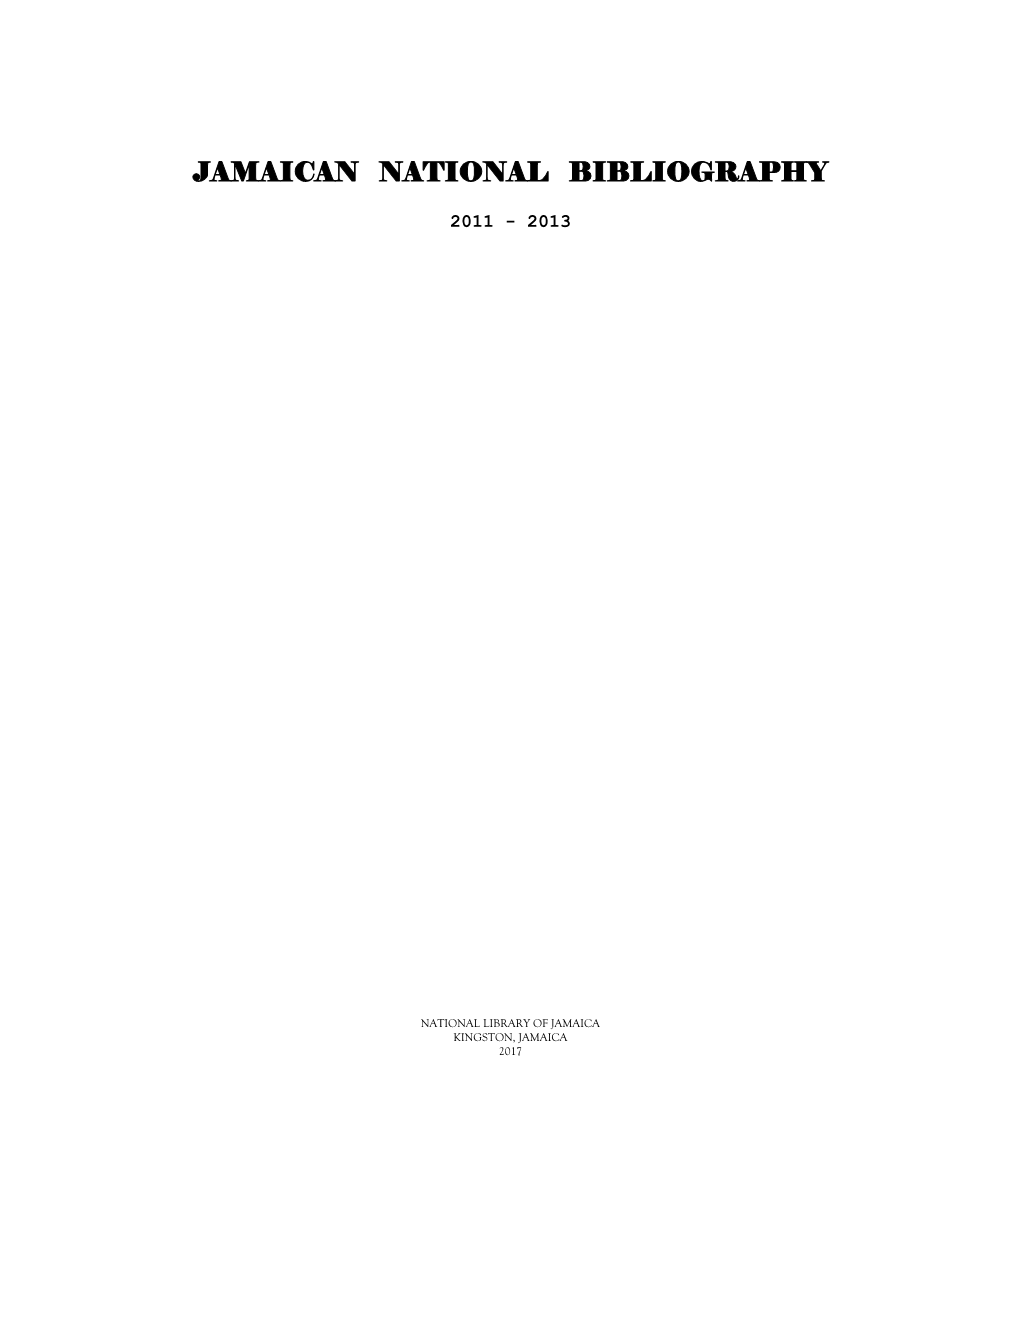 Jamaican National Bibliography